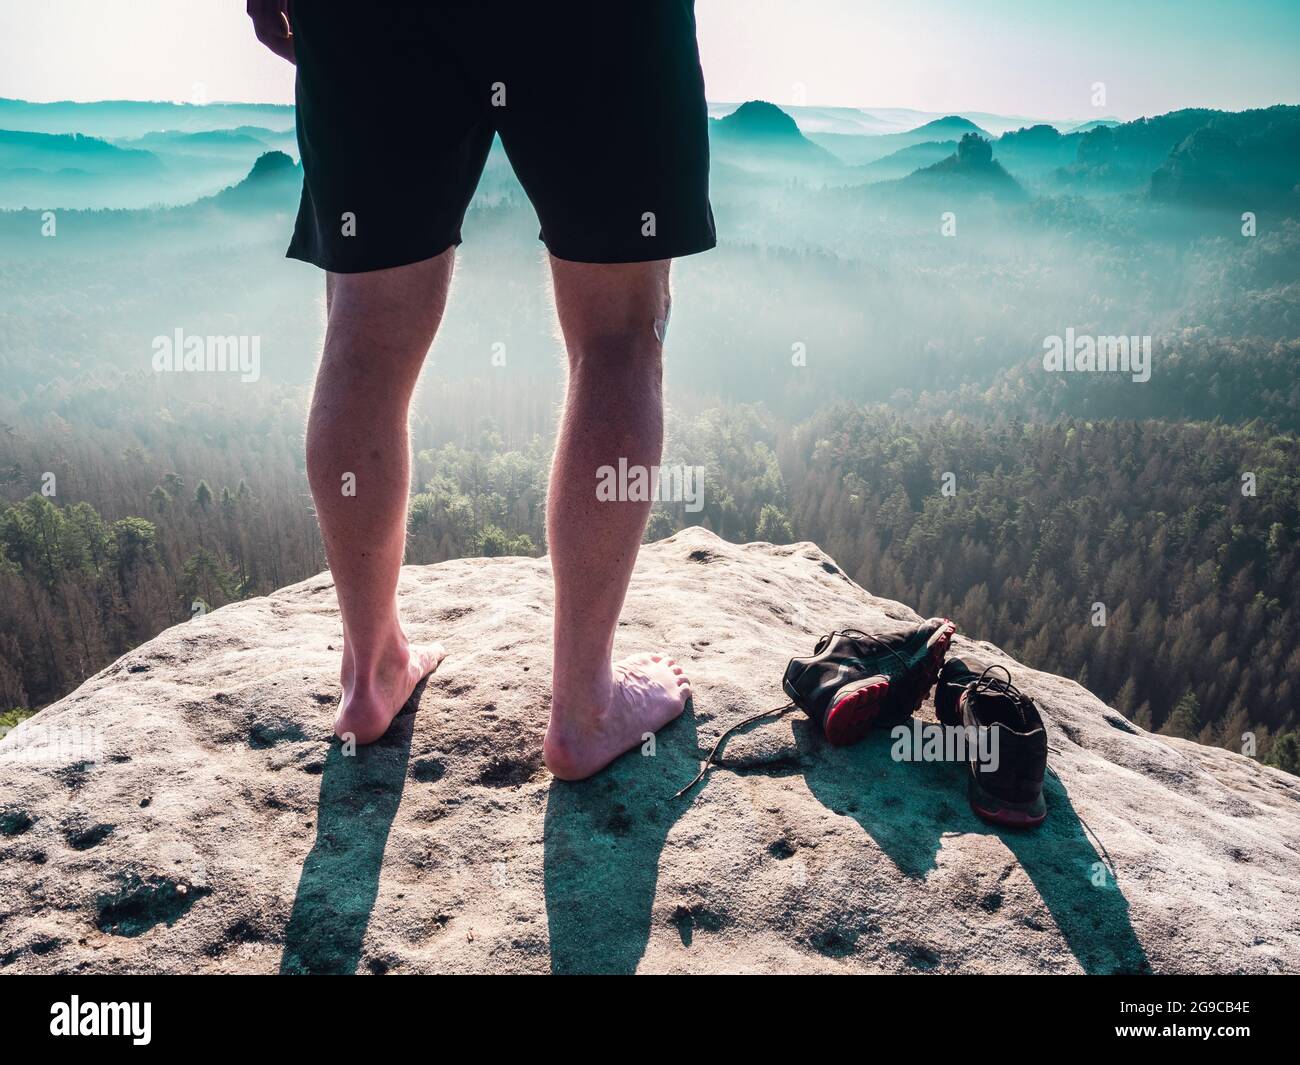 Barfuß schlanke Beine mit haarigen Kälbern eines männlichen Läufers, der  neben abgenommenen verschwitzten Laufschuhen an einem felsigen Rand über  einem langen tiefen vally in der Natu steht Stockfotografie - Alamy